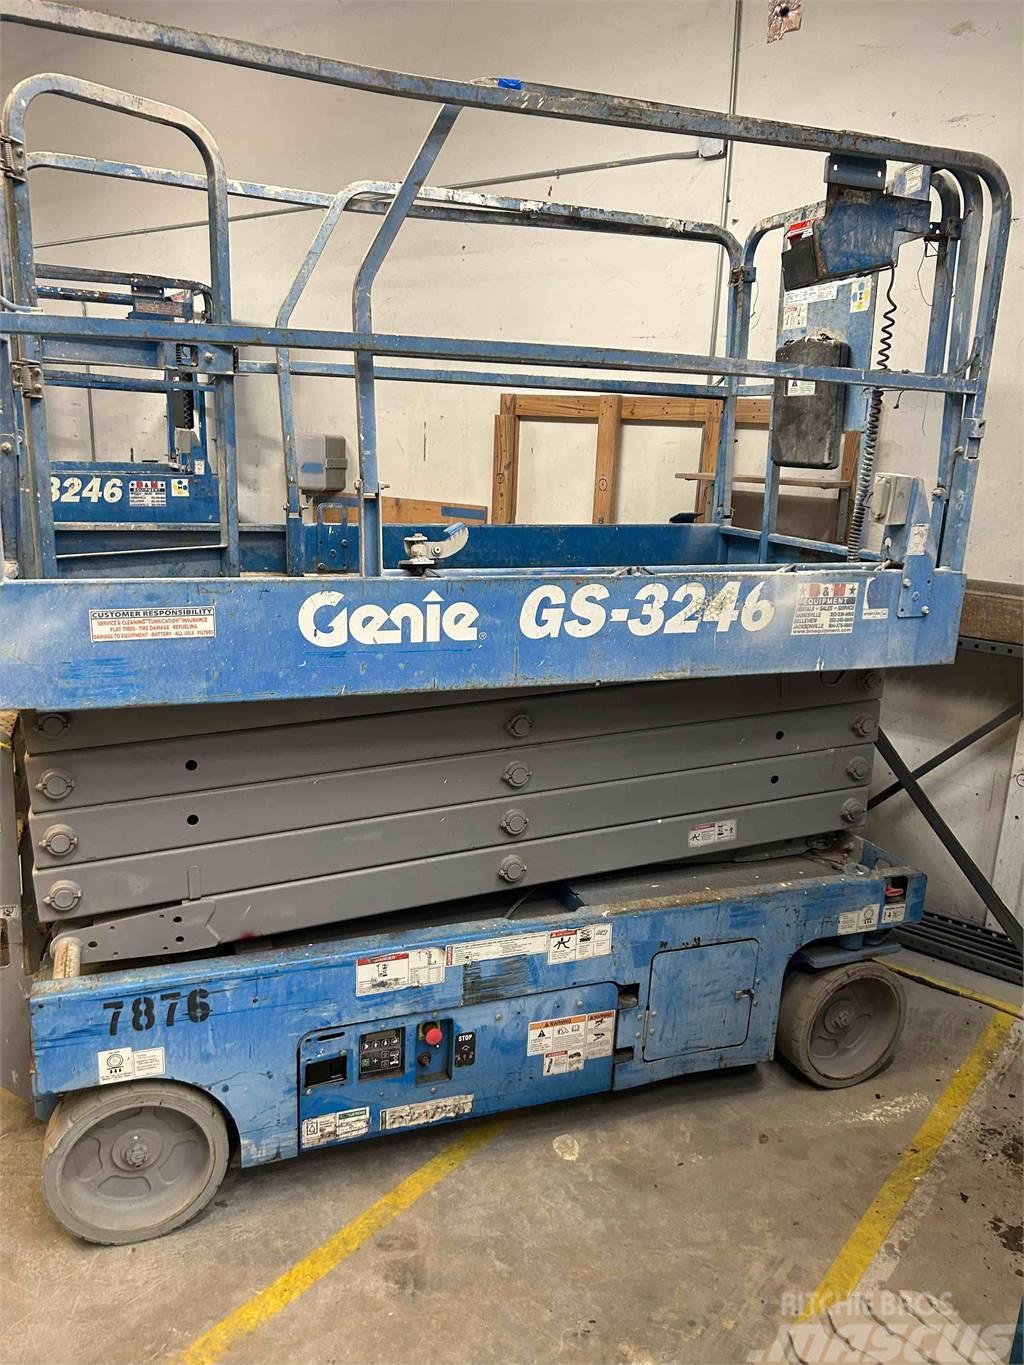 Genie GS-3246 Scissor lifts